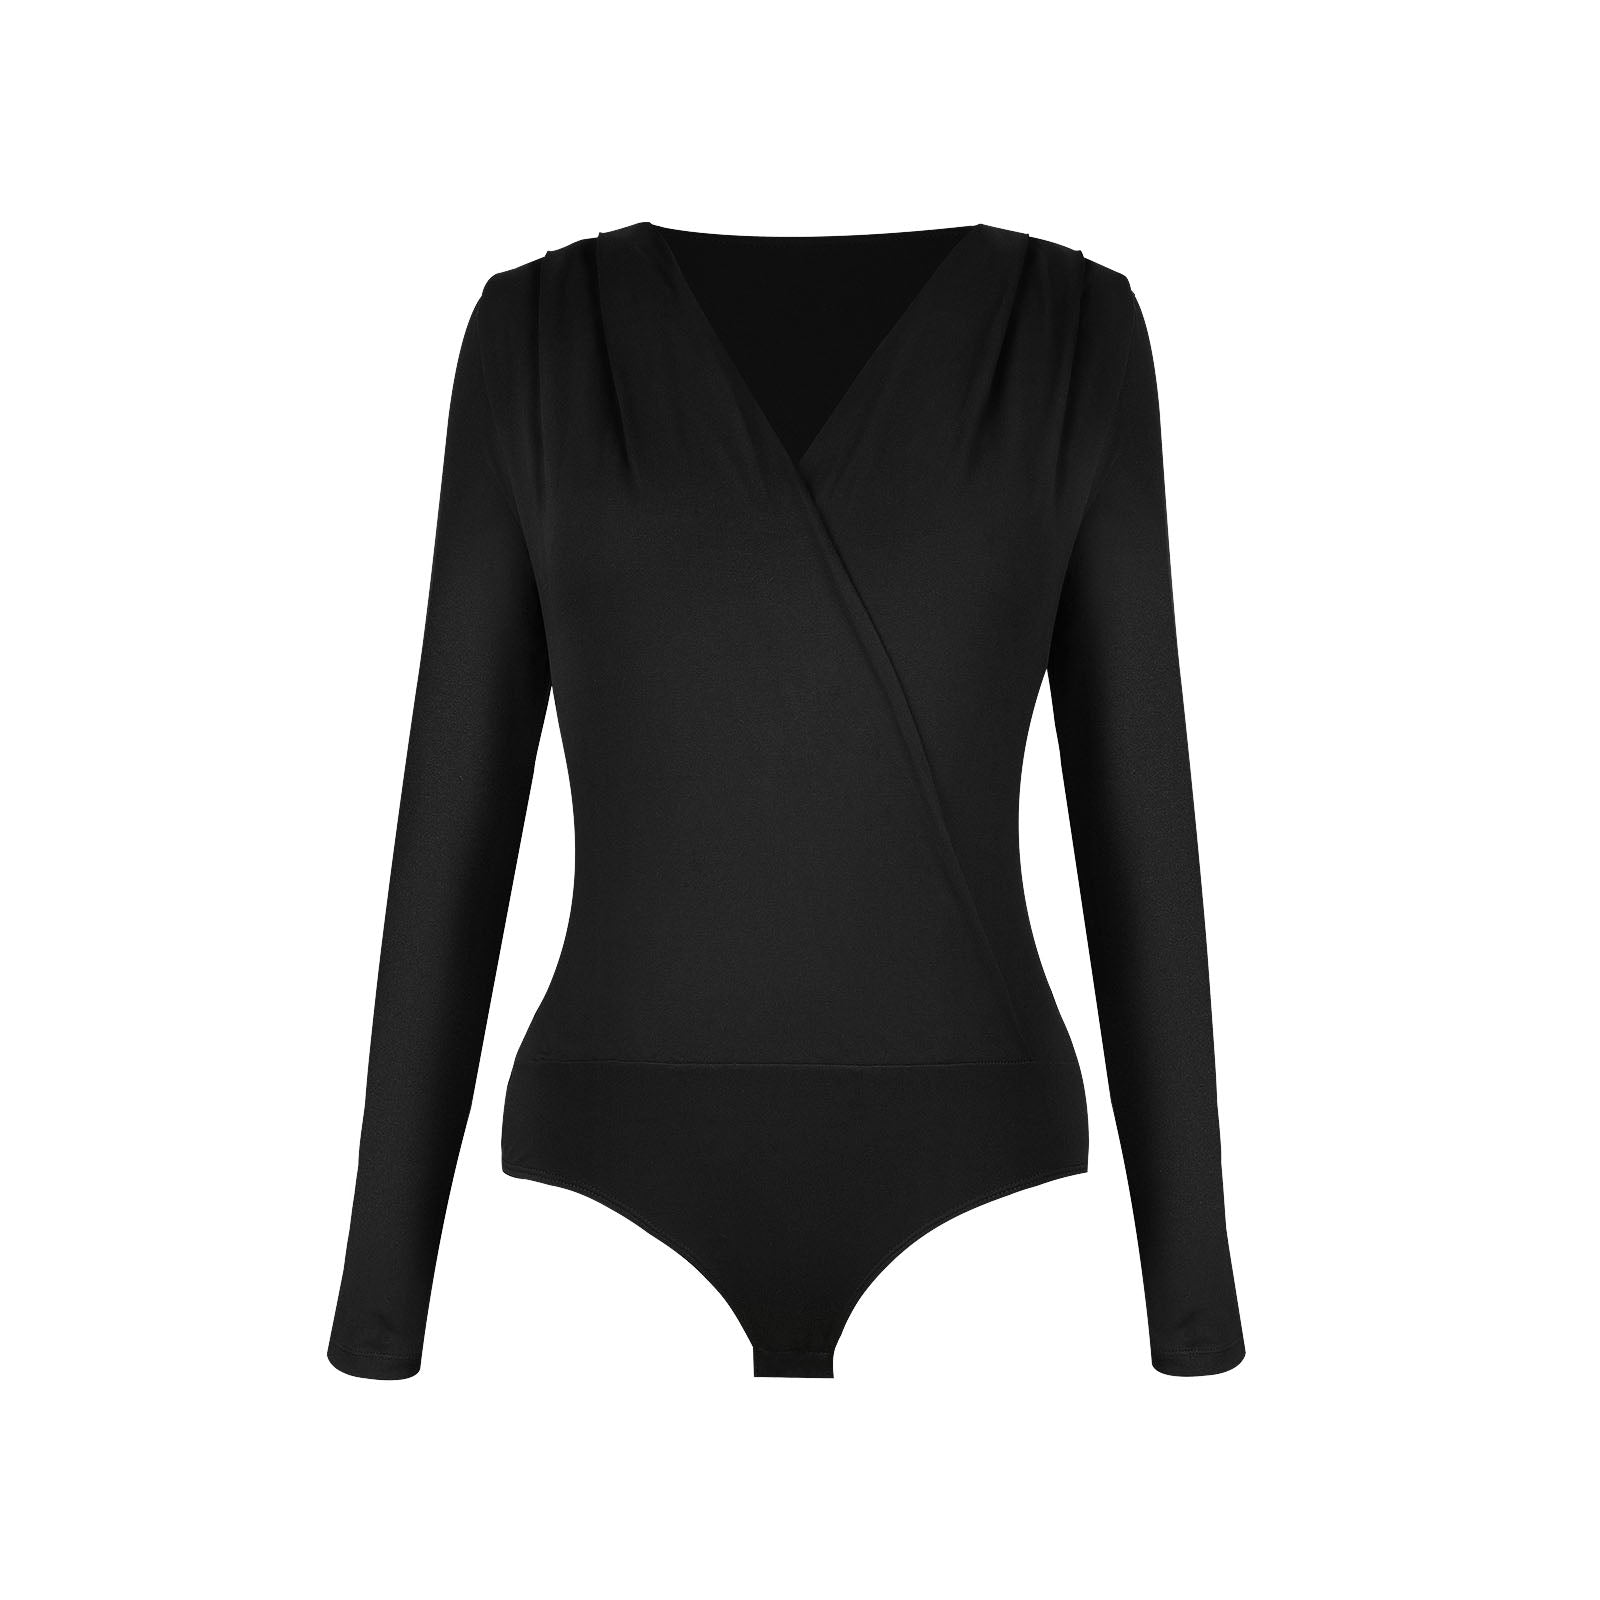 Shaperin Women's V Neck Long Sleeve Bodysuit